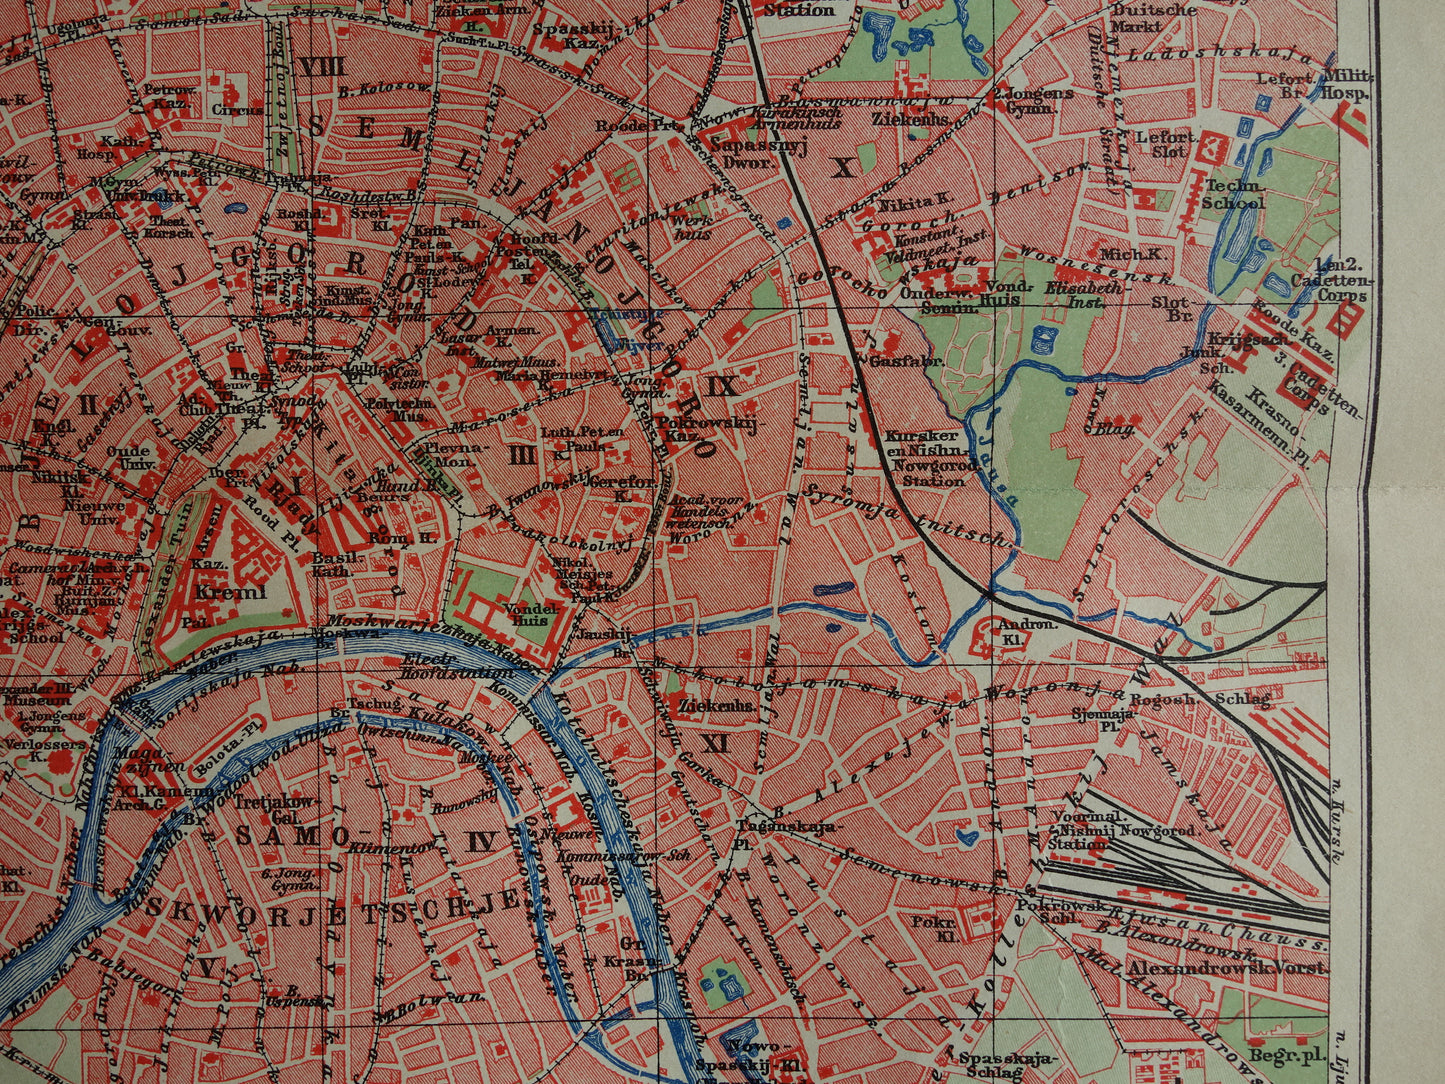 MOSKOU Oude kaart van Moskou uit 1910 originele Nederlandse antieke plattegrond